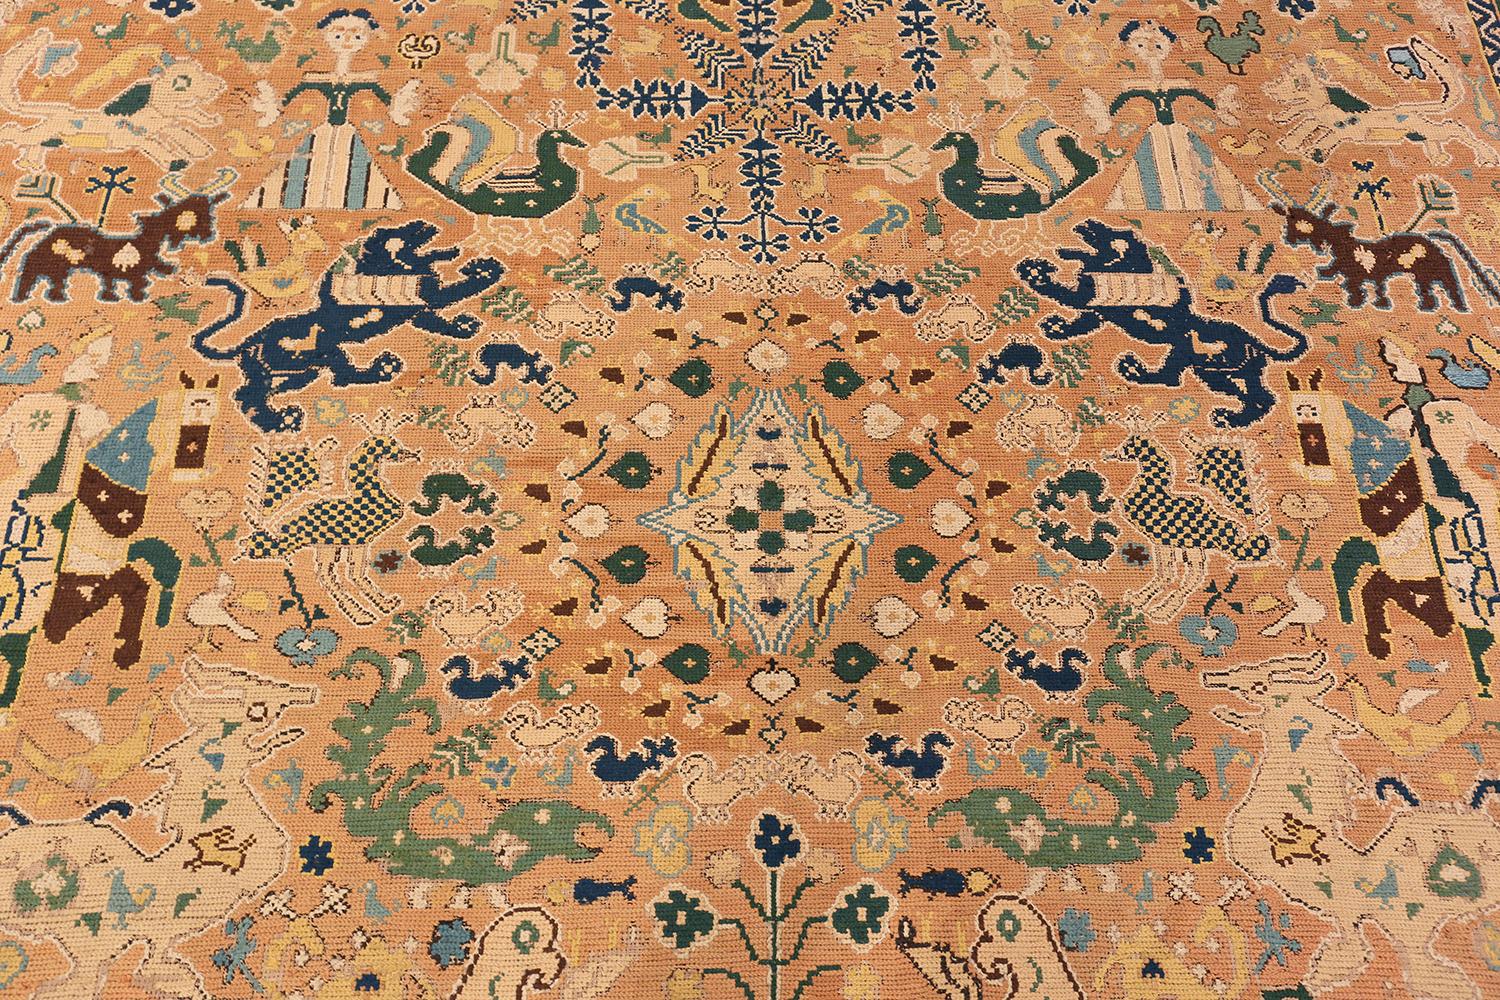 Superbe tapis Arraiolos portugais antique à l'aiguille du 18e siècle, Pays d'origine / Type de tapis : Tapis portugais, Circa Date : 18th Century - Size : 10 ft x 18 ft 3 in (3.05 m x 5.56 m).